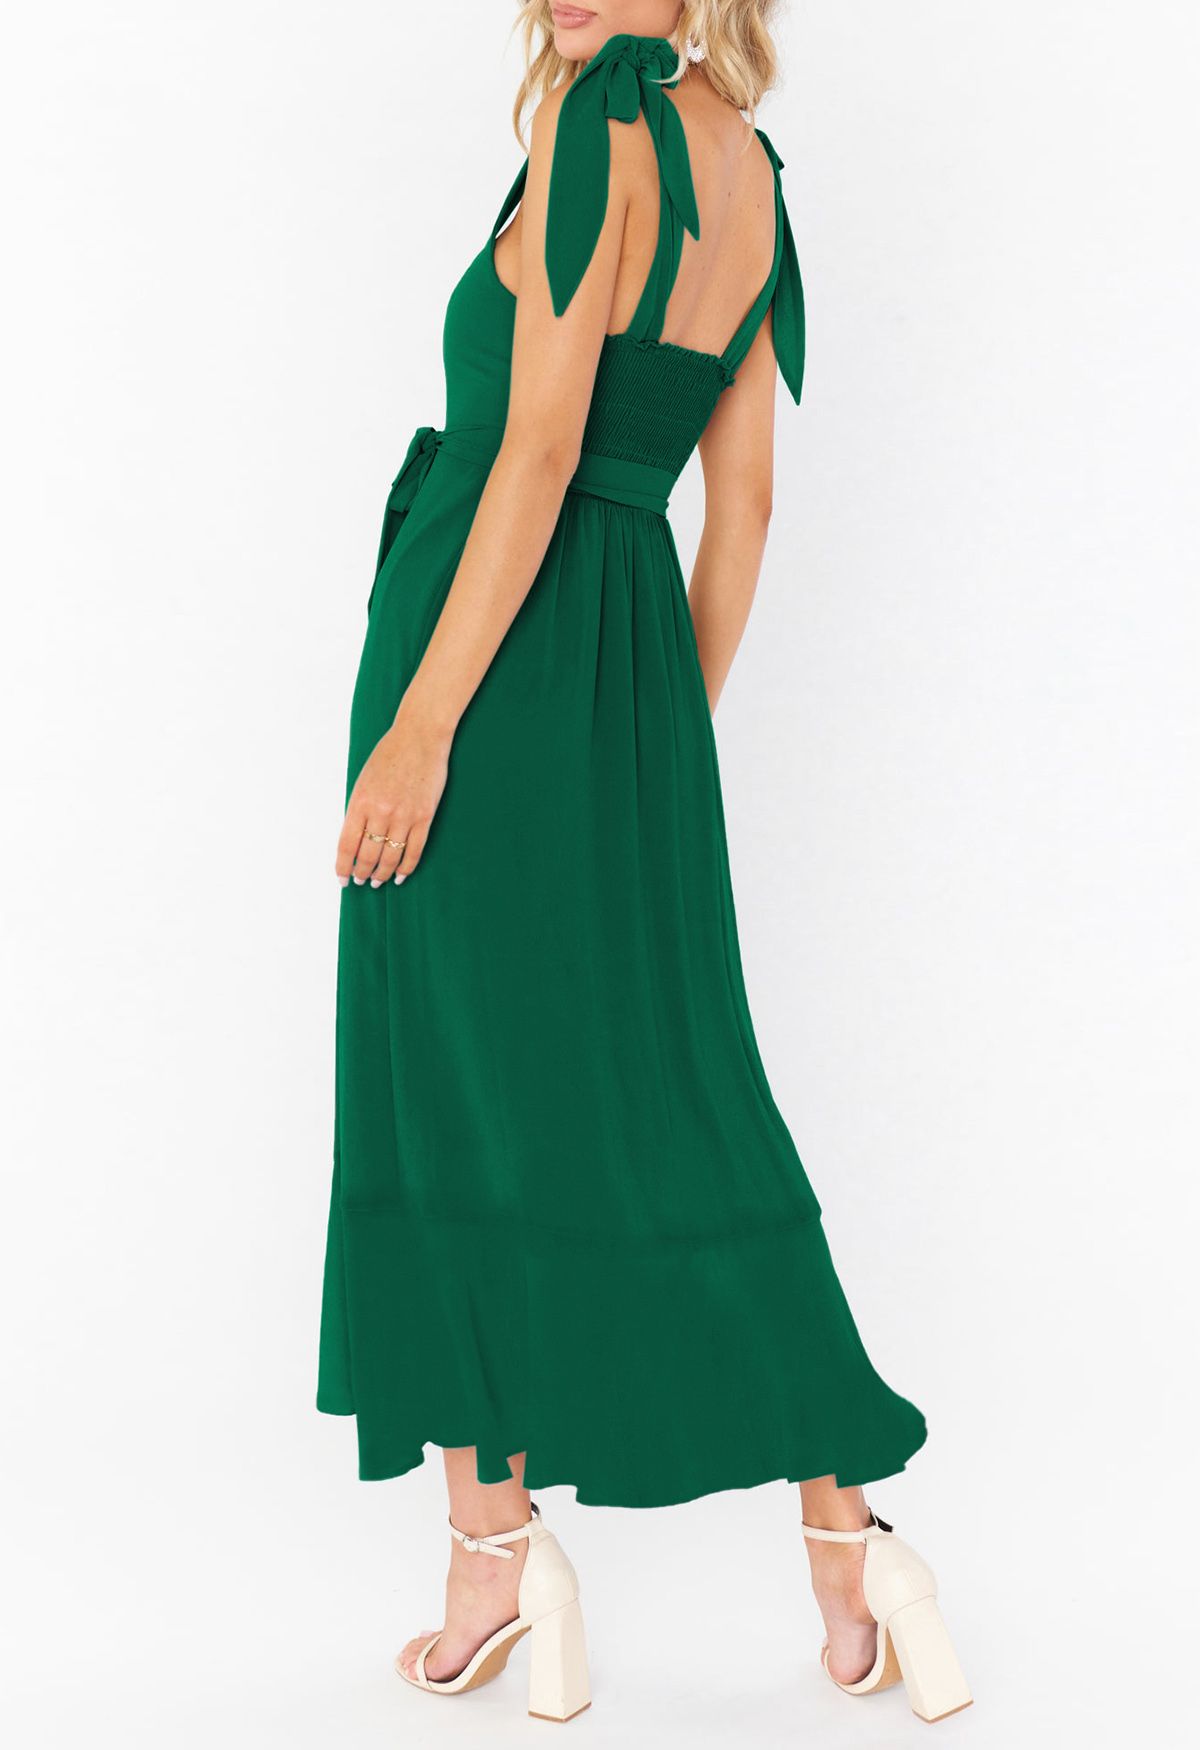 Cami-Kleid mit Rüschensaum und Schulterbindung in Grün